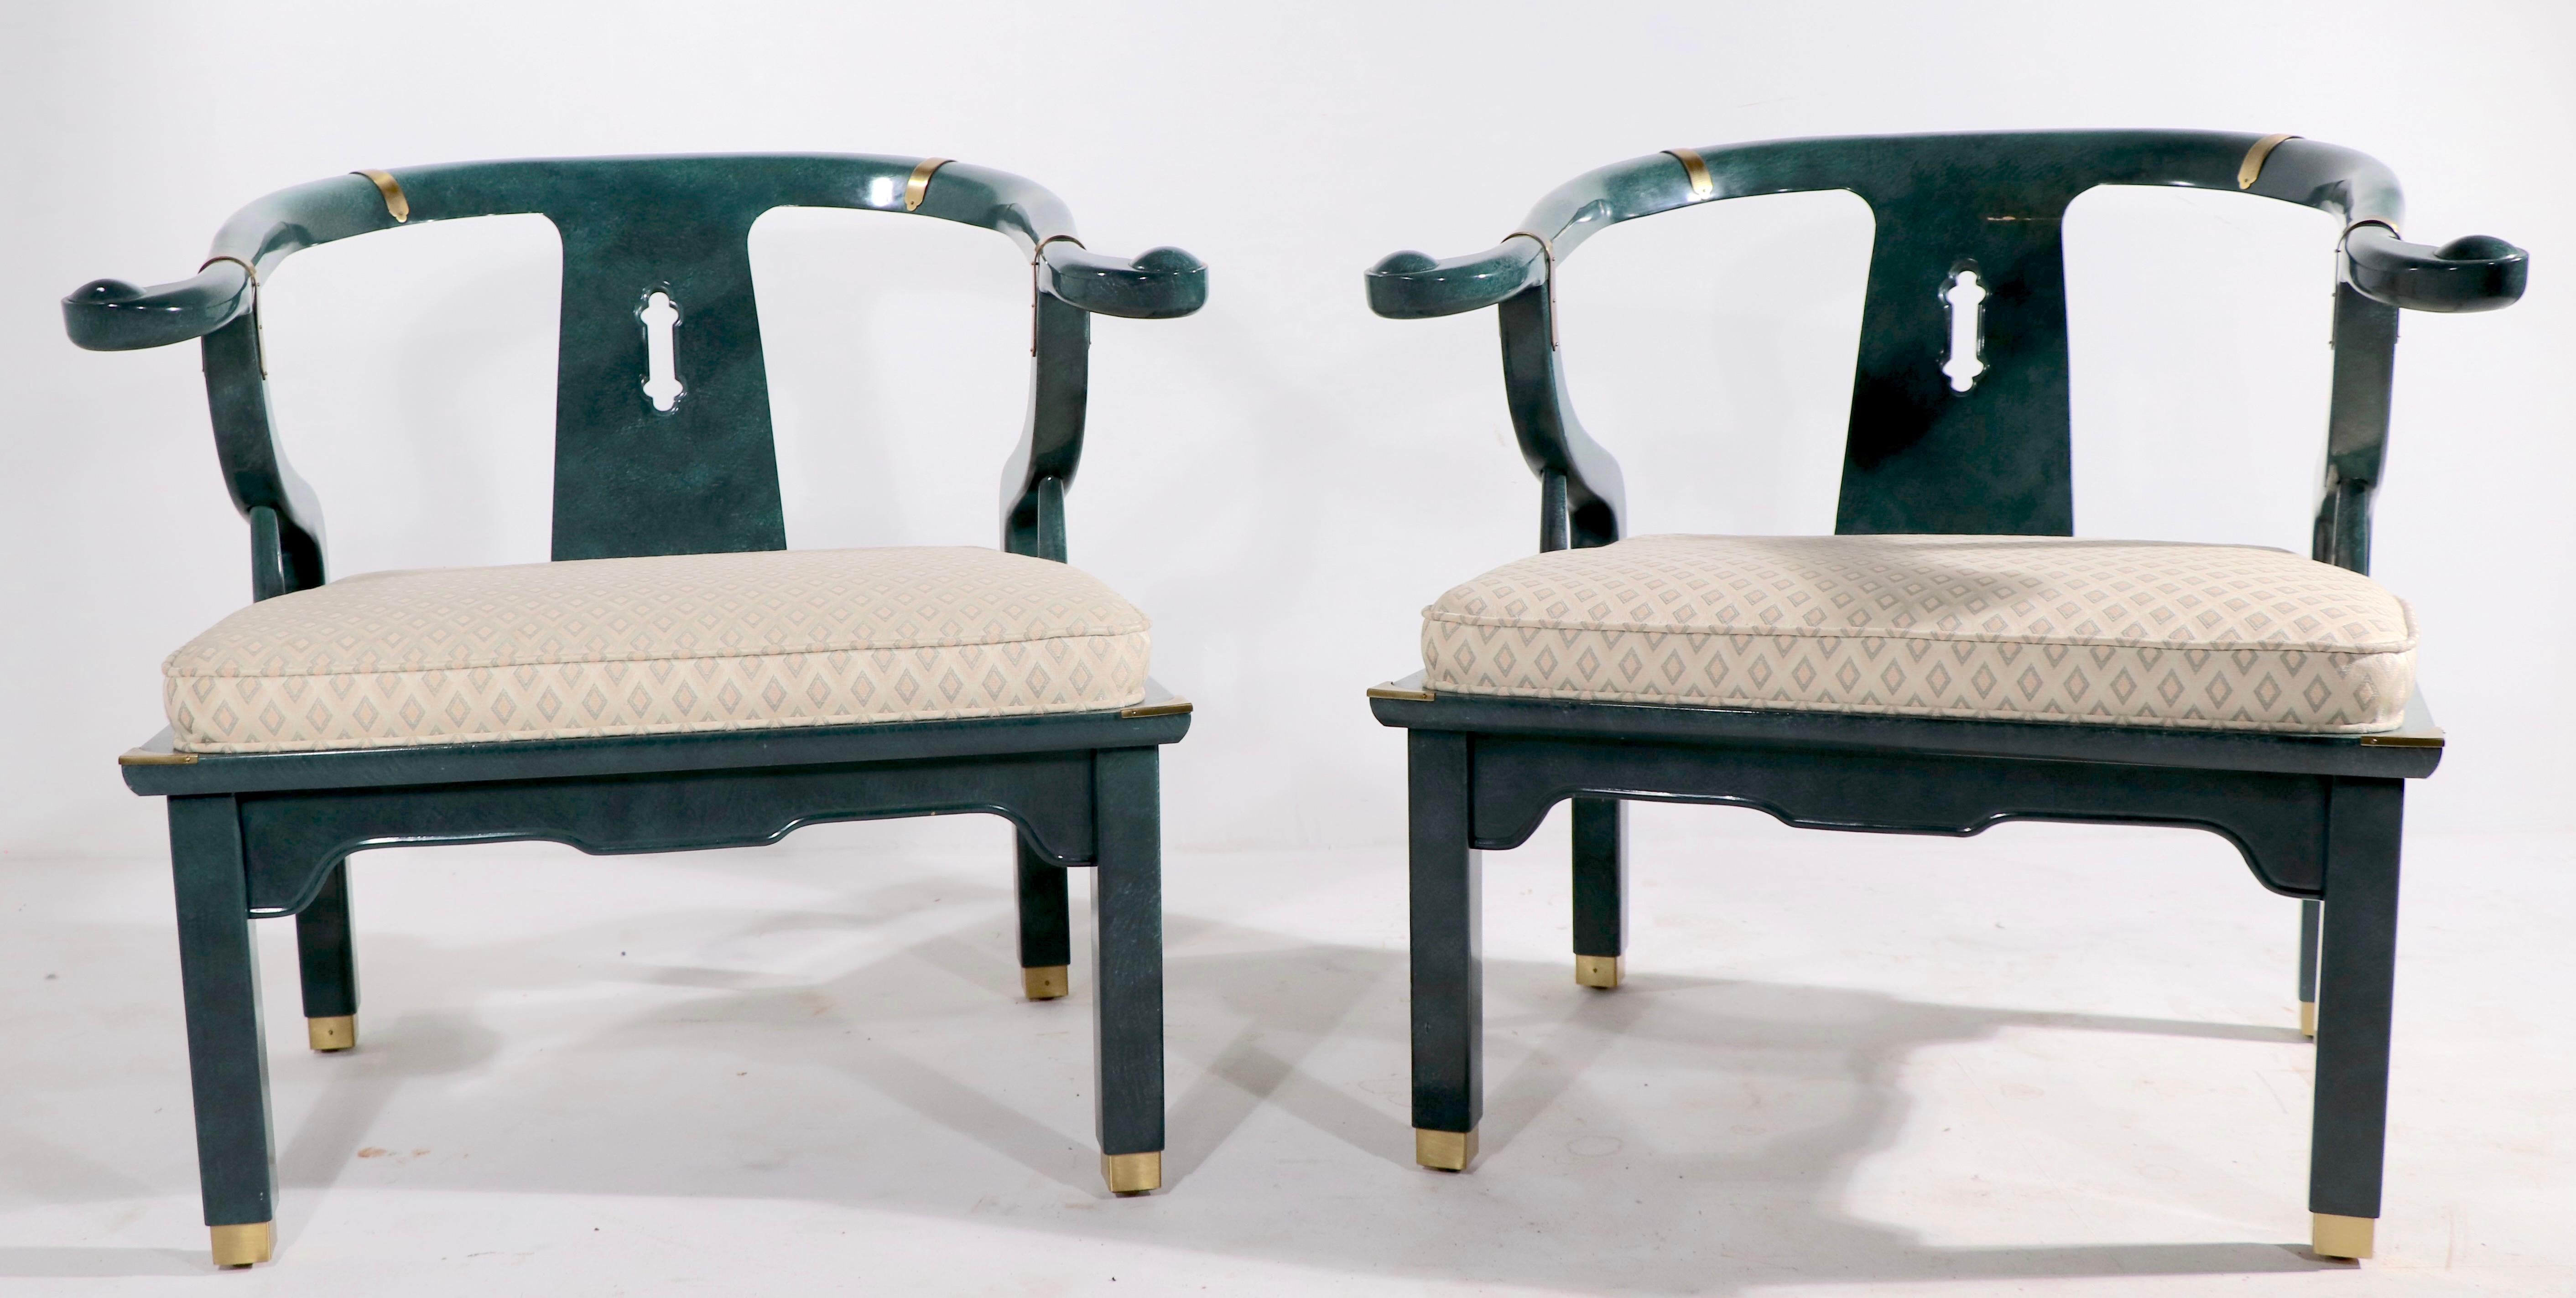 Ein Paar Stühle im chinesischen oder asiatischen modernen Stil - ausgeführt in einem ungewöhnlichen Jade-Faux-Finish. Beide sind in einem sehr guten, originalen, sauberen und gebrauchsfertigen Zustand - beide weisen kleinere Schäden an der